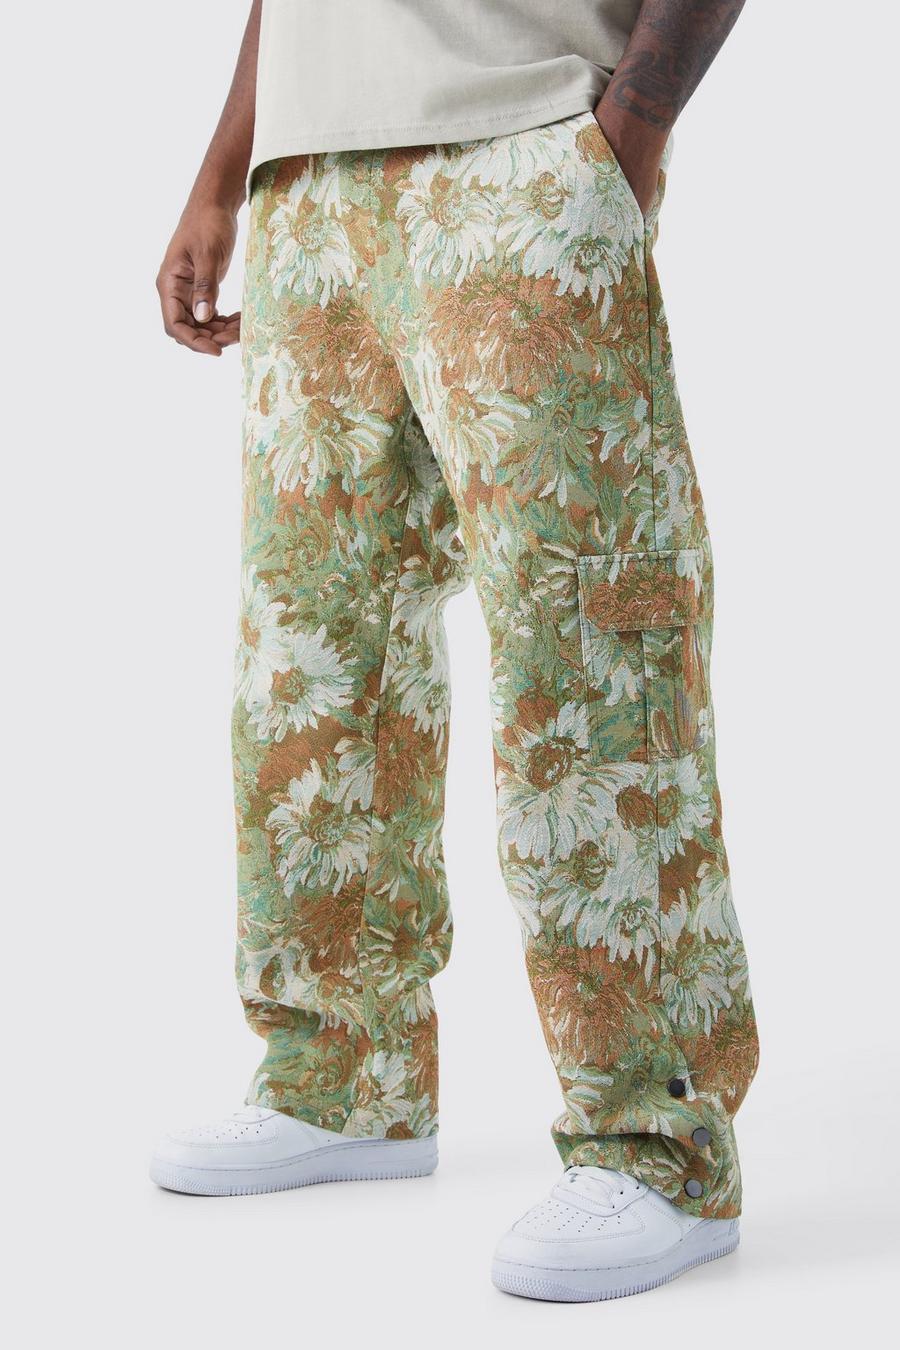 Pantalón Plus holgado con cintura fija, botones de presión en el bajo y estampado de flores estilo tapiz, Sage